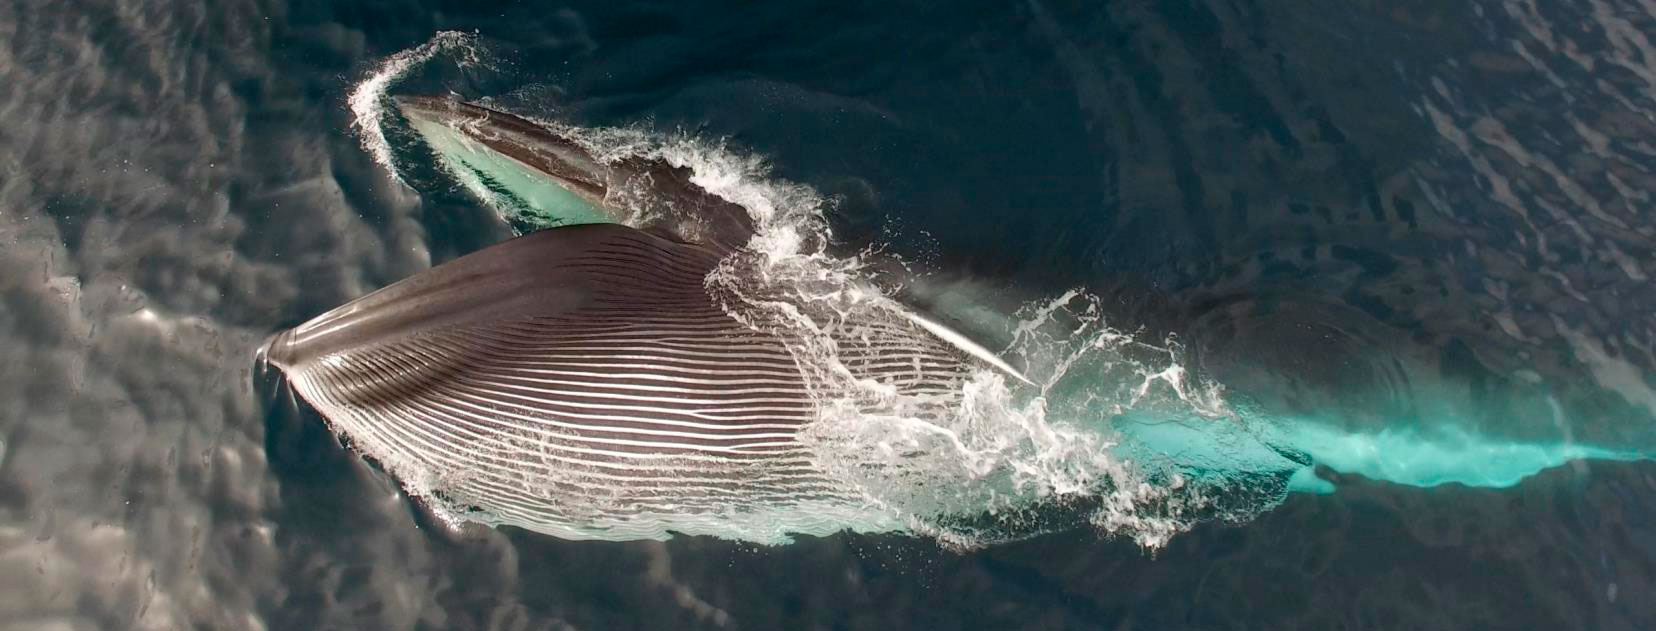 Tenemos un secreto: ¡Hay ballenas en la costa de Sitges y Vilanova!